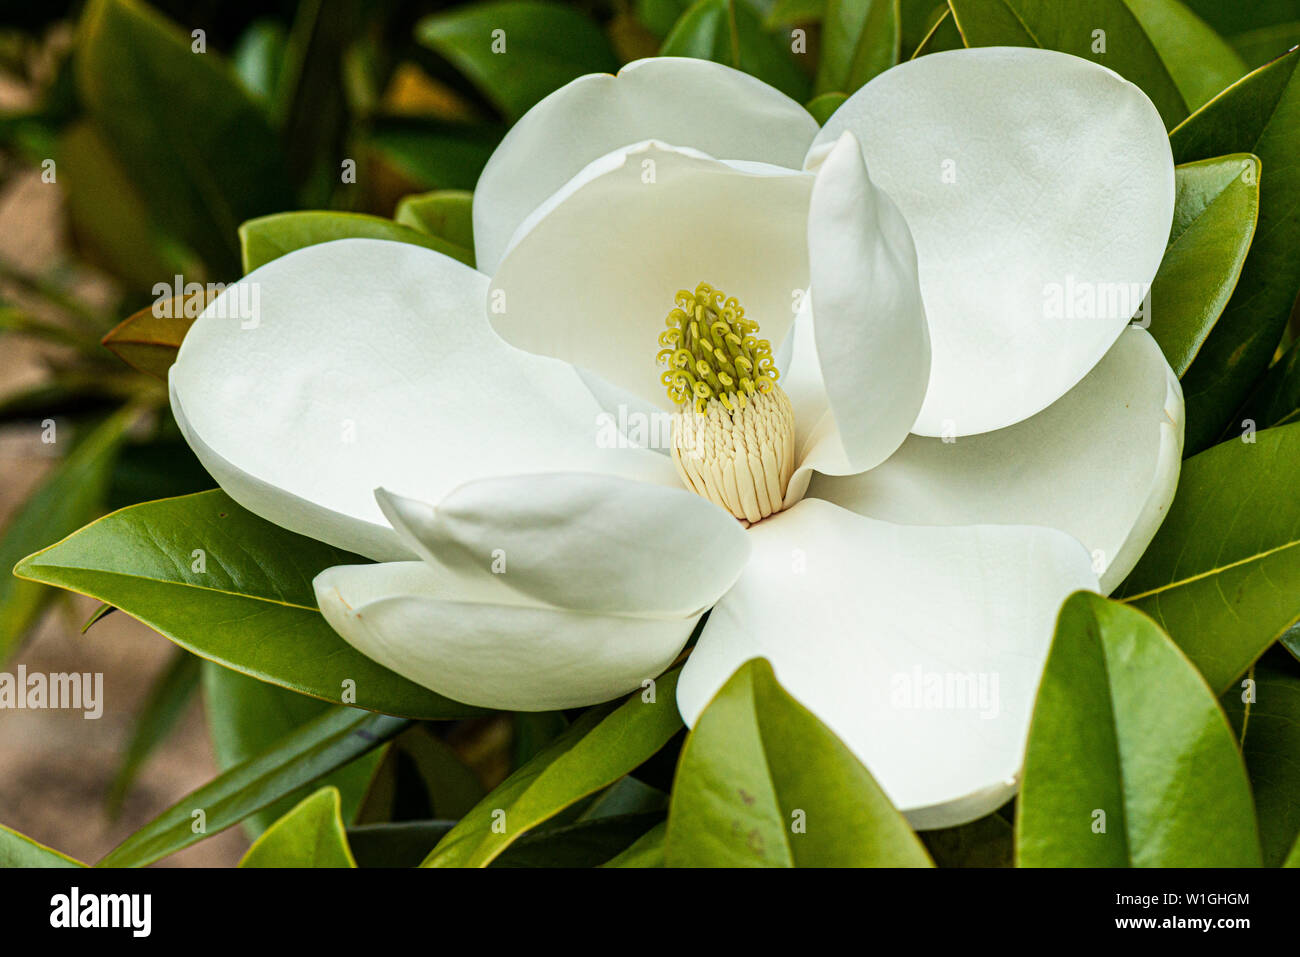 The flower of a bull bay (Magnolia grandiflora) Stock Photo